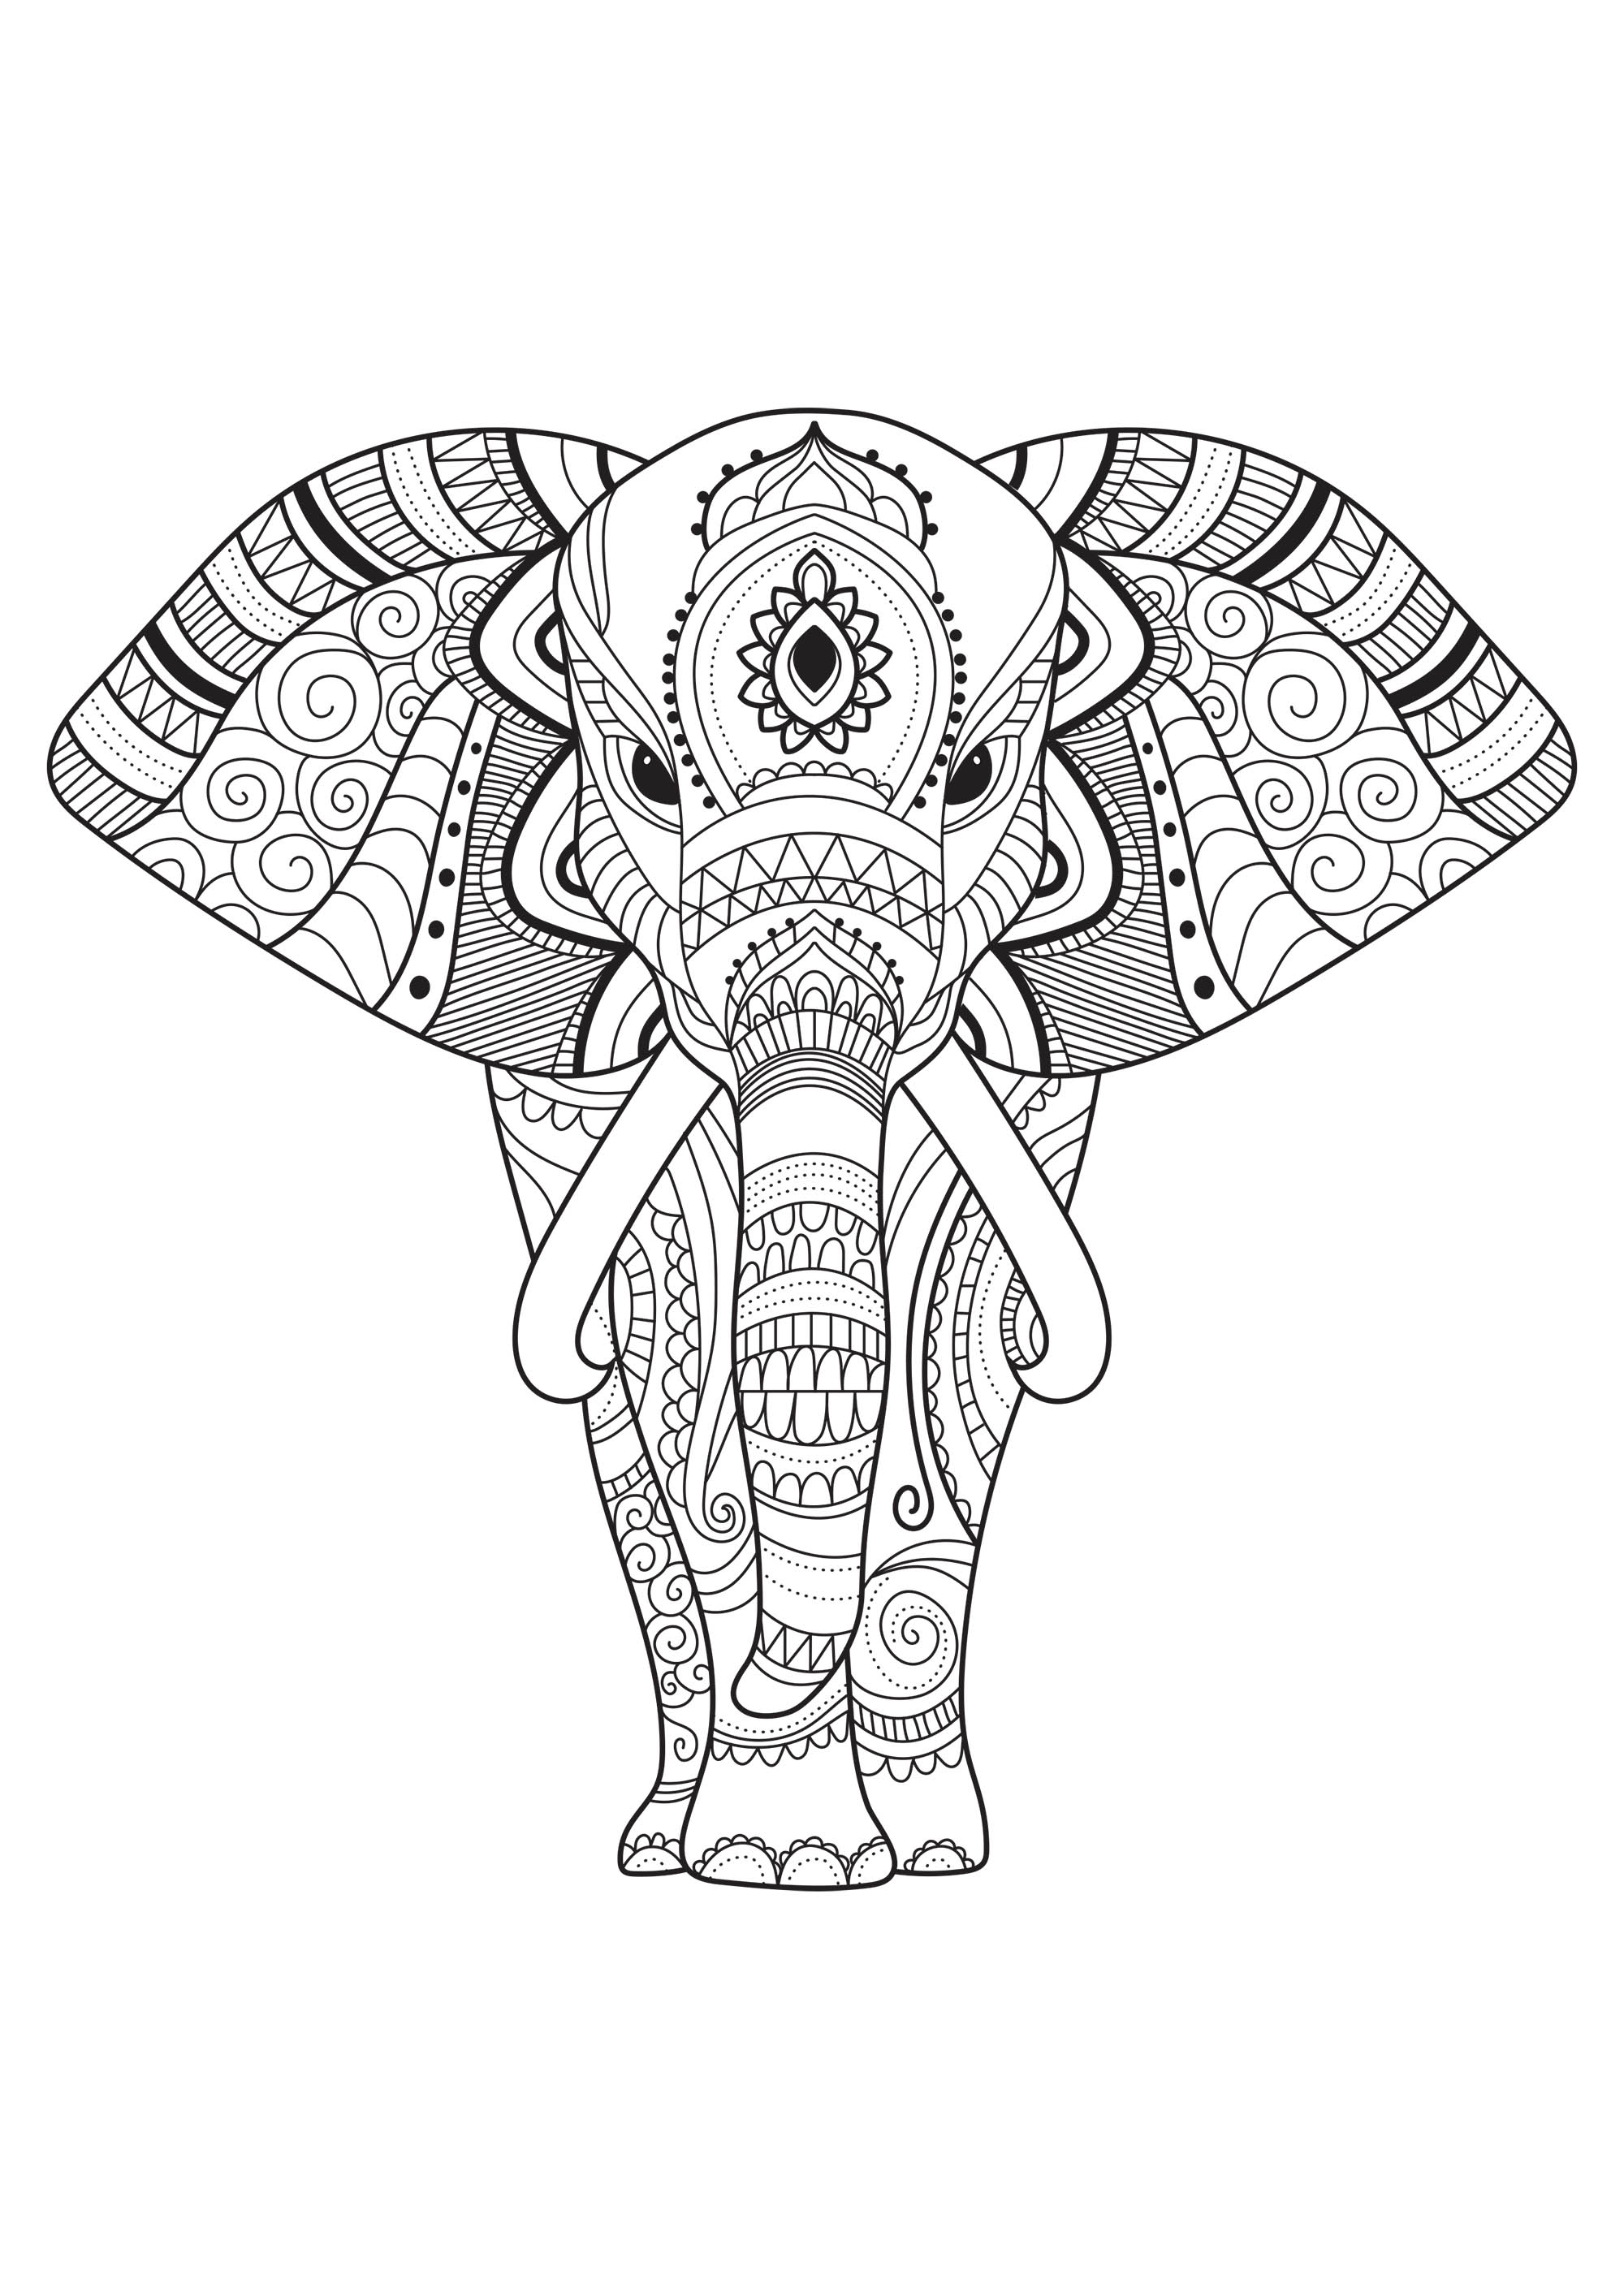 Semplici disegni da colorare in questo maestoso elefante. Prodotto dal sito regali.com, Artista : Gifts.com